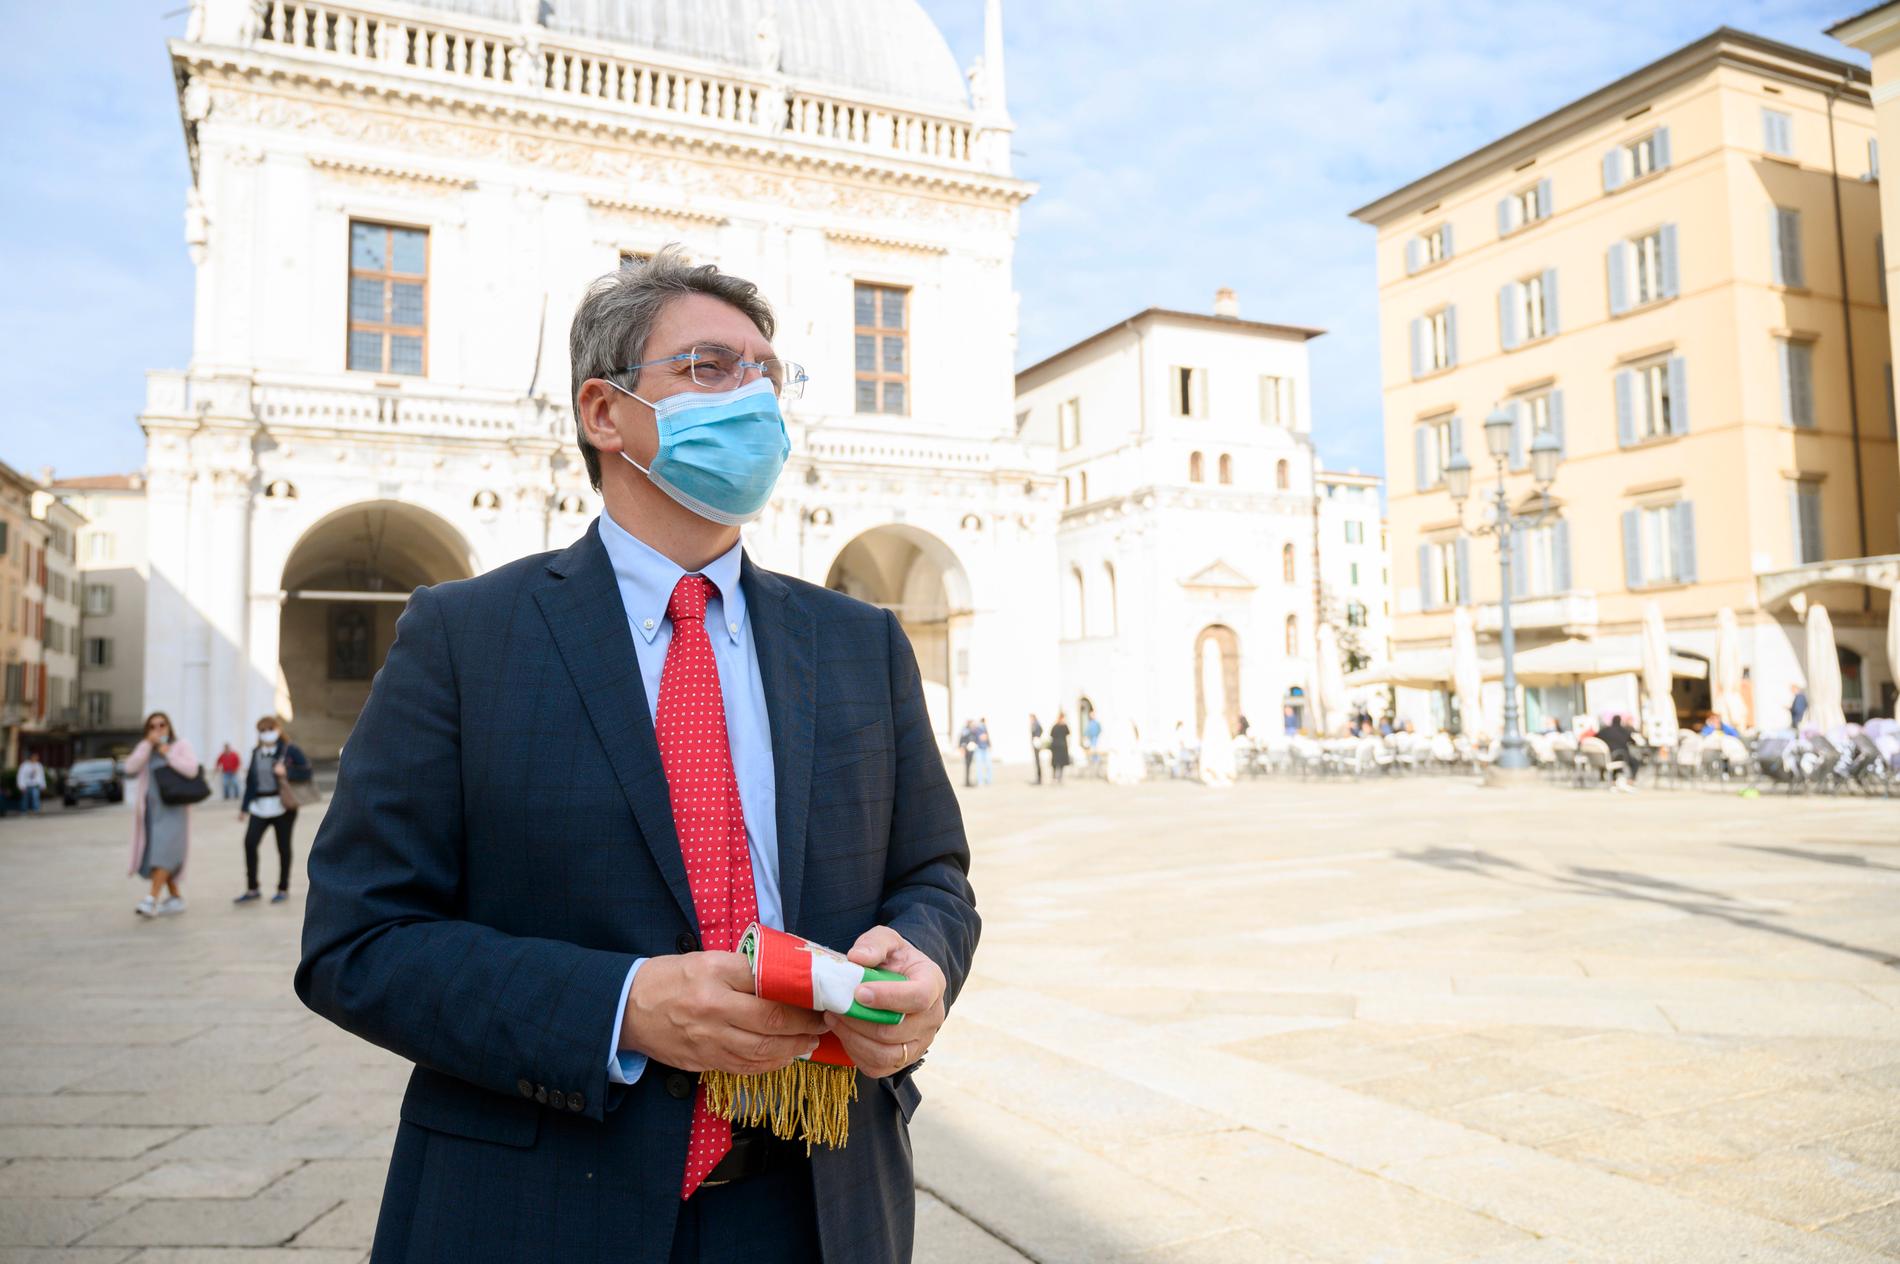 Borgmästaren i Brescia, Emilio Del Bono, framför Palazzo della Loggia där han har sitt kontor. I handen håller han borgmästarebandet.